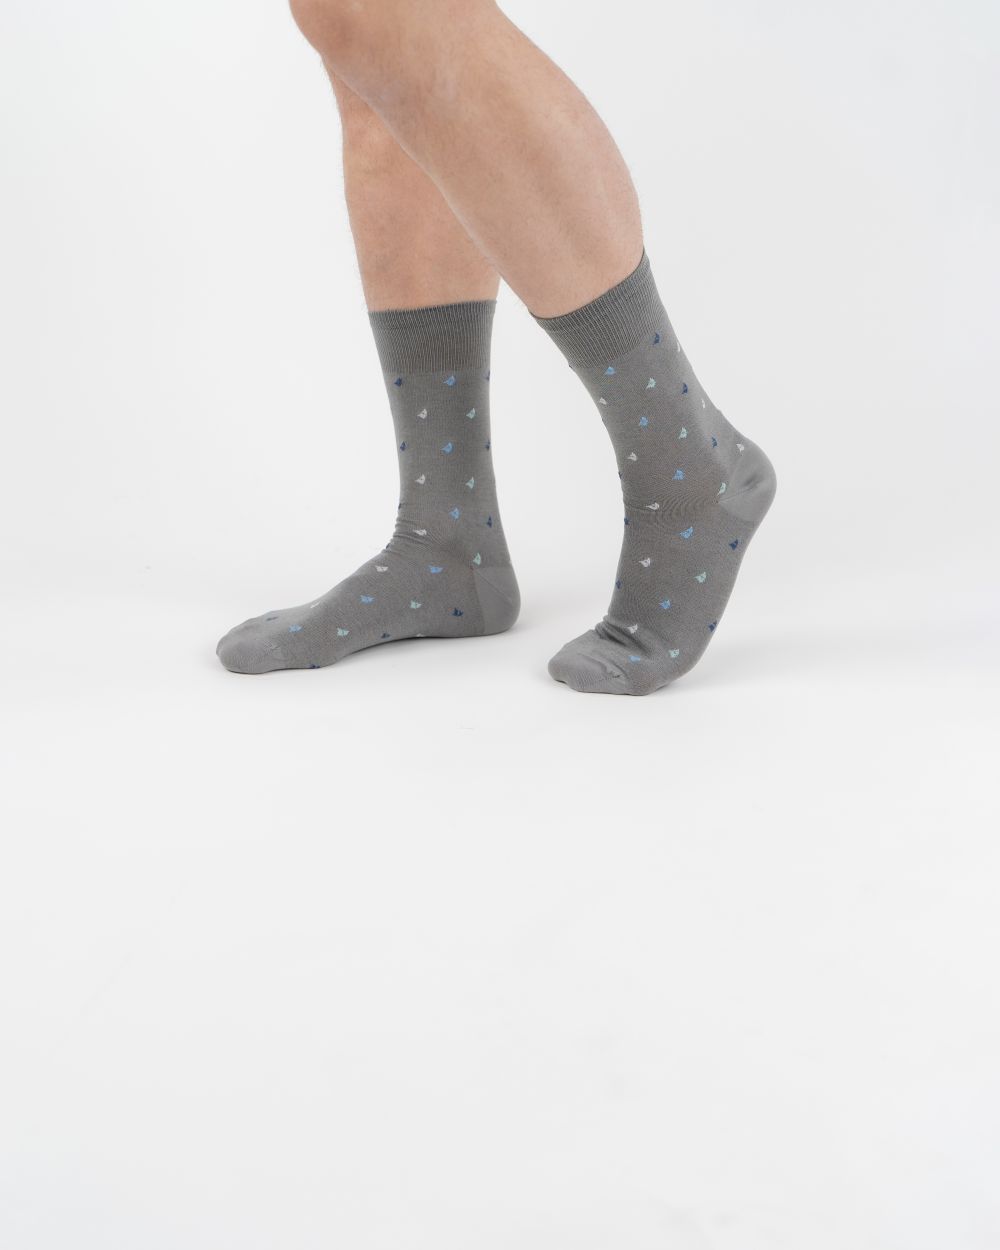 Navigare Intimo muške čarape svetlo sive boje